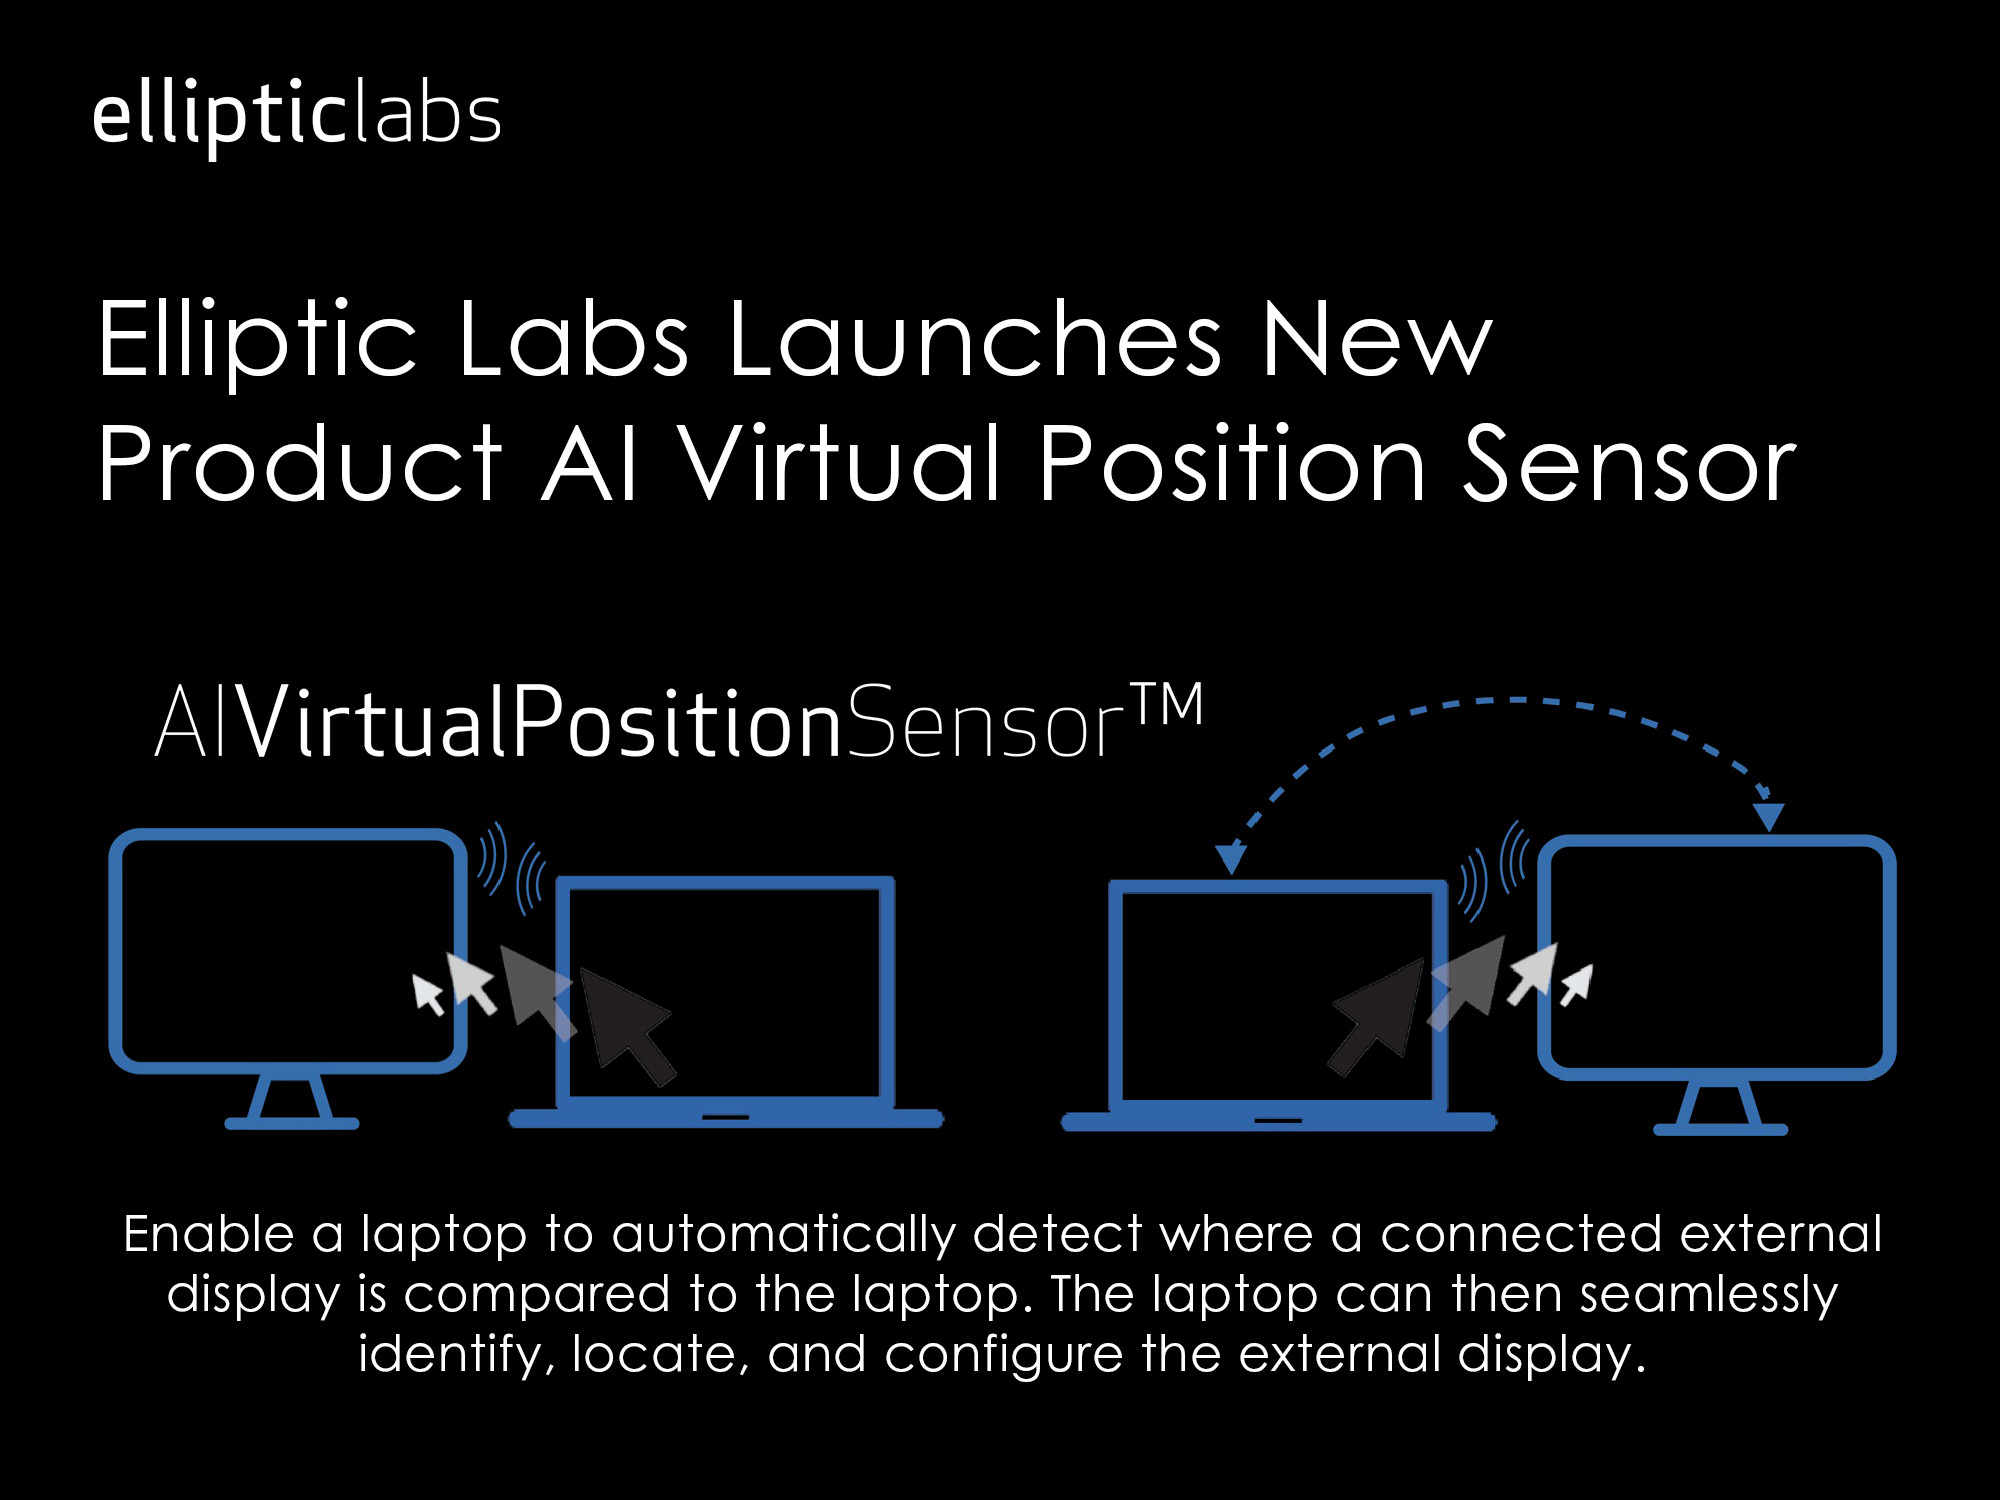 Elliptic Labs面向笔记本市场推出全新产品: AI Virtual Position Sensor™, 可自动进行外部显示设置